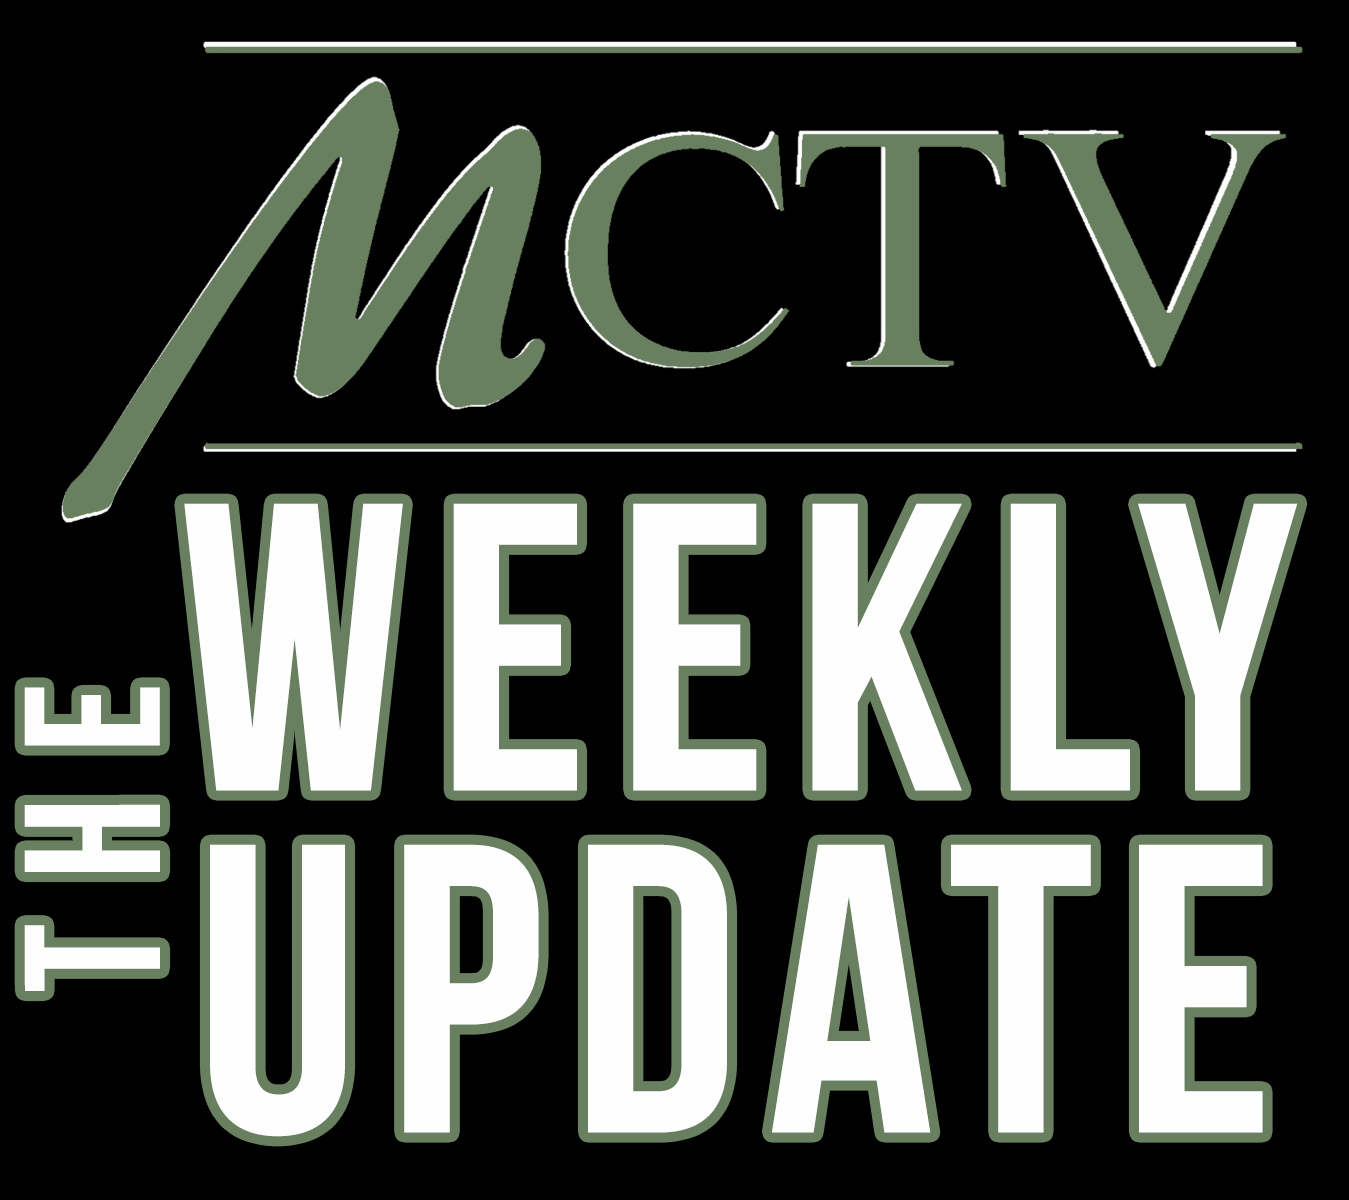 MCTV Weekly Update - Week of August 13th